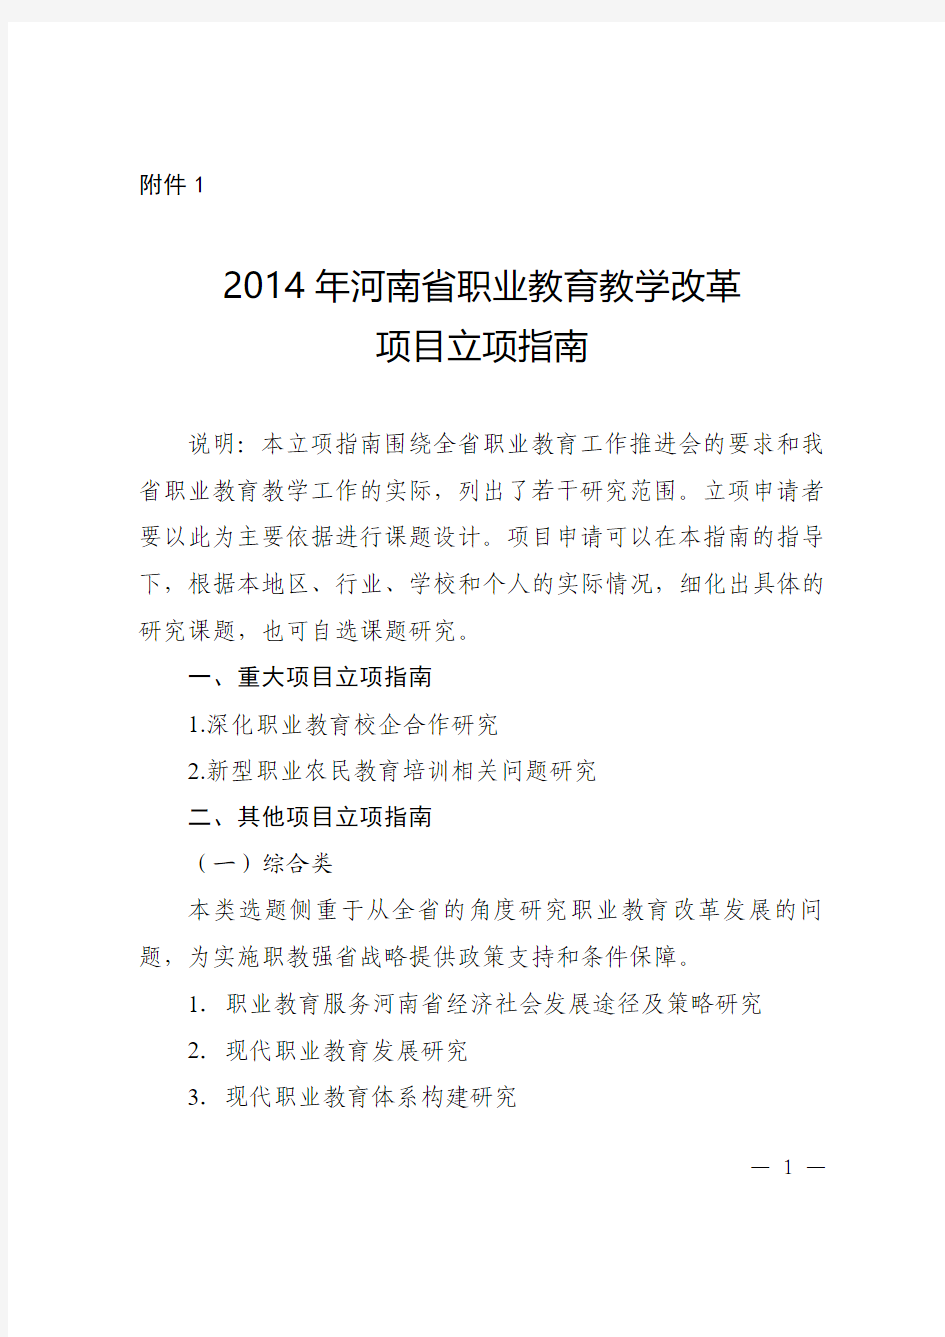 2014年河南省职业教育教学改革项目立项指南